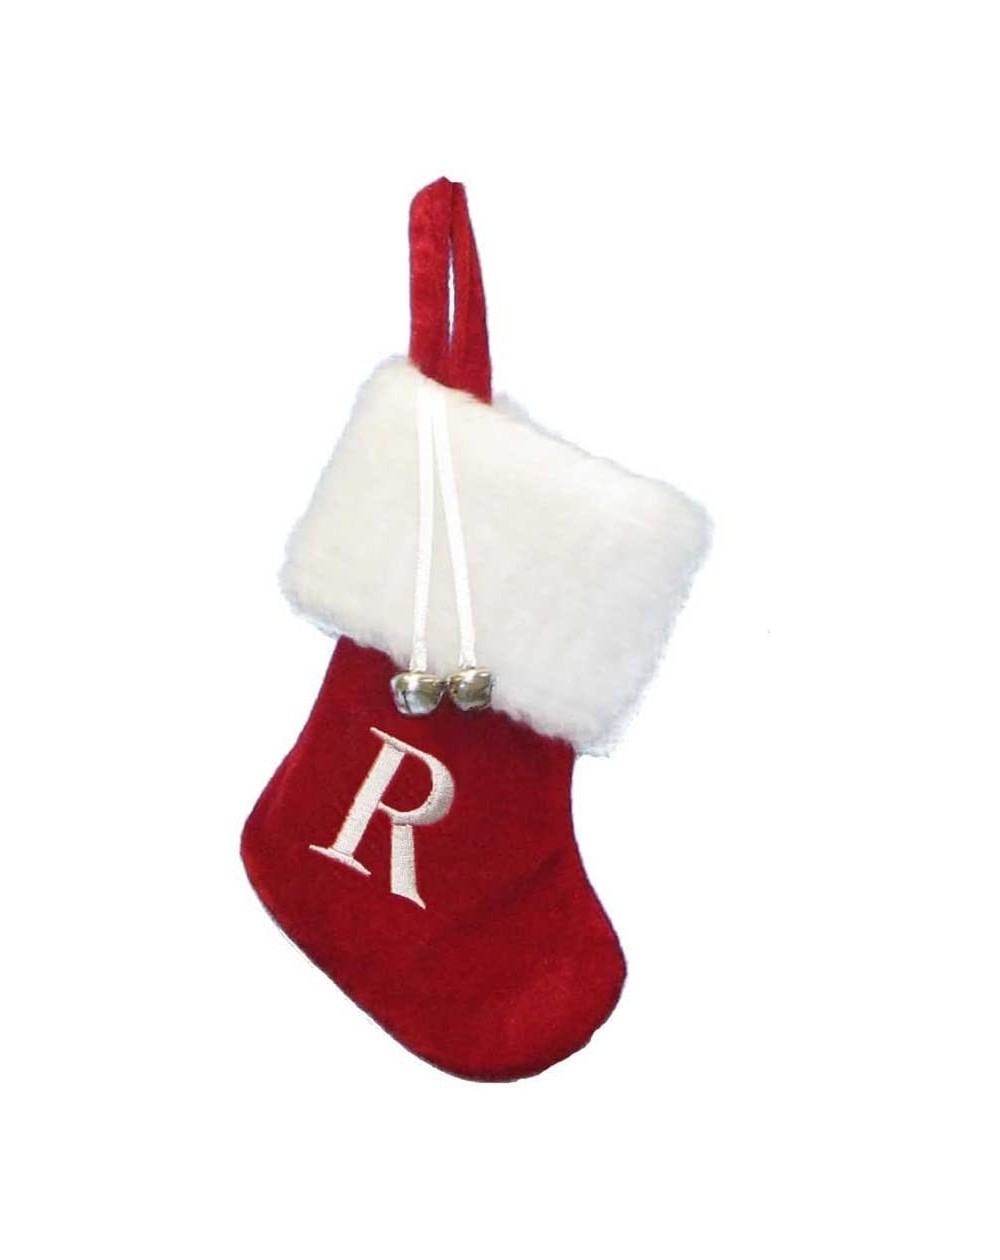 Stockings & Holders 7" Red/White Monogram "R" Mini Stocking - CF11BEZV6UP $11.66